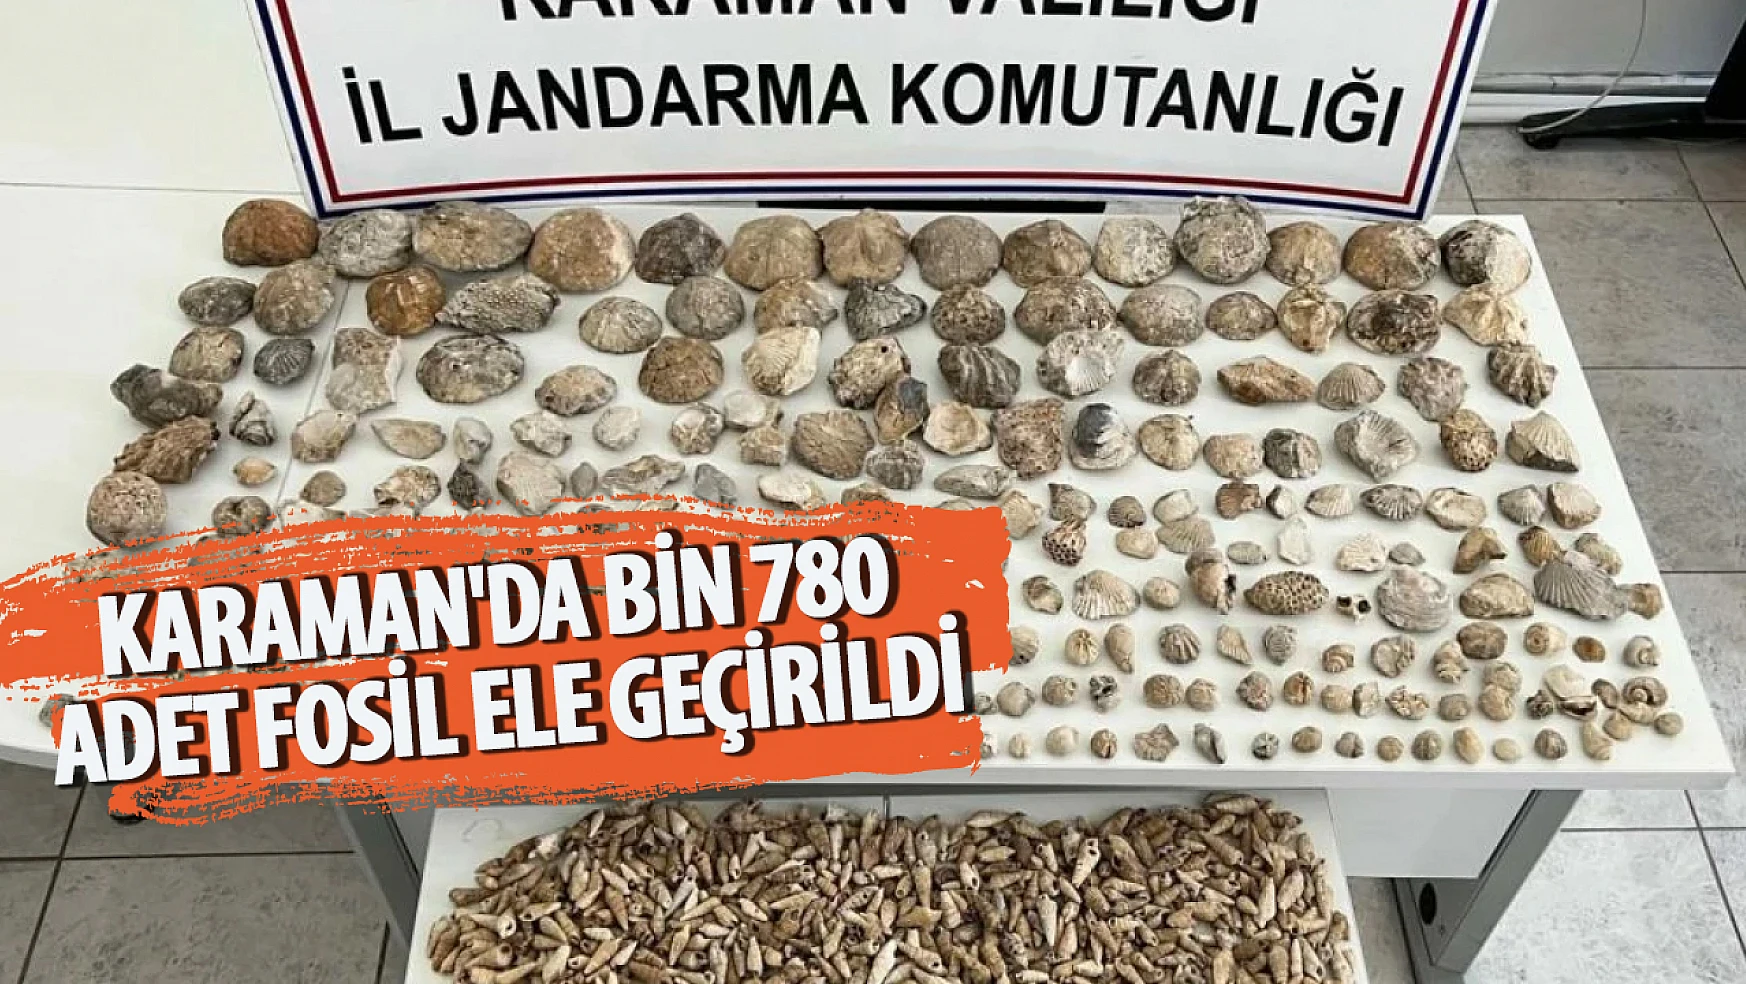 Karaman'da bin 780 adet fosil ele geçirildi